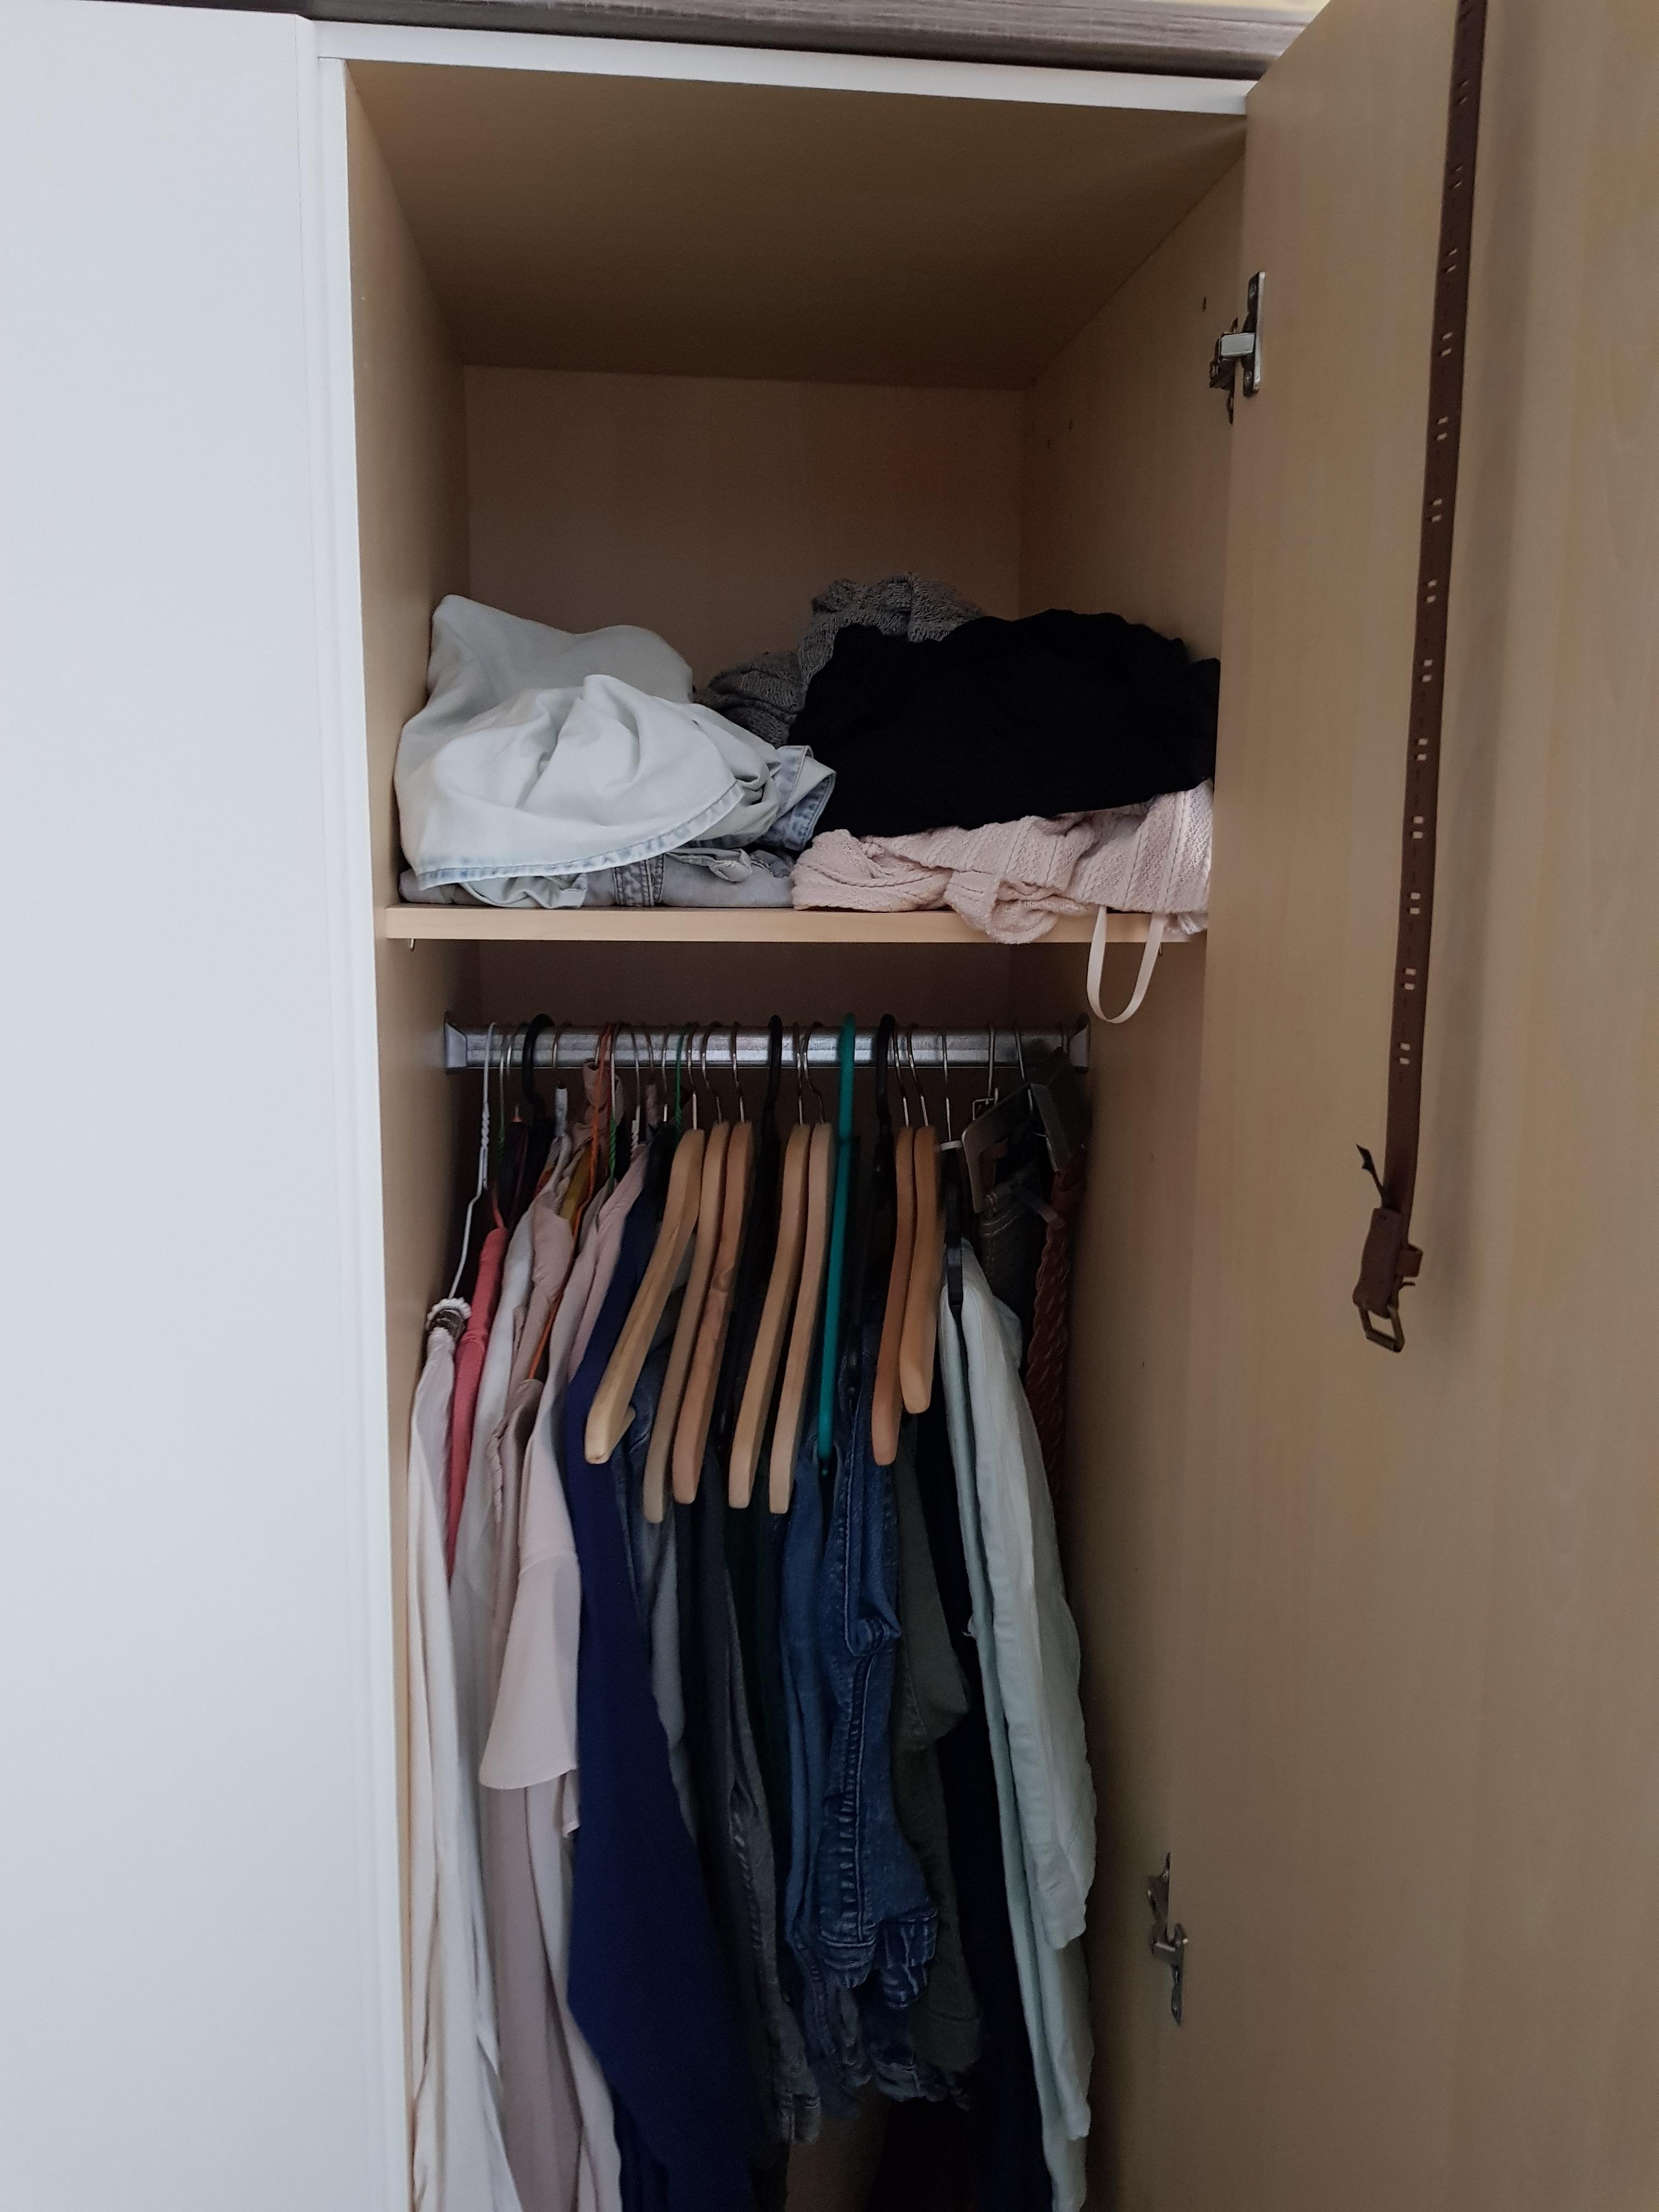 Chaos auf kleinstem Raum #kleiderschrank